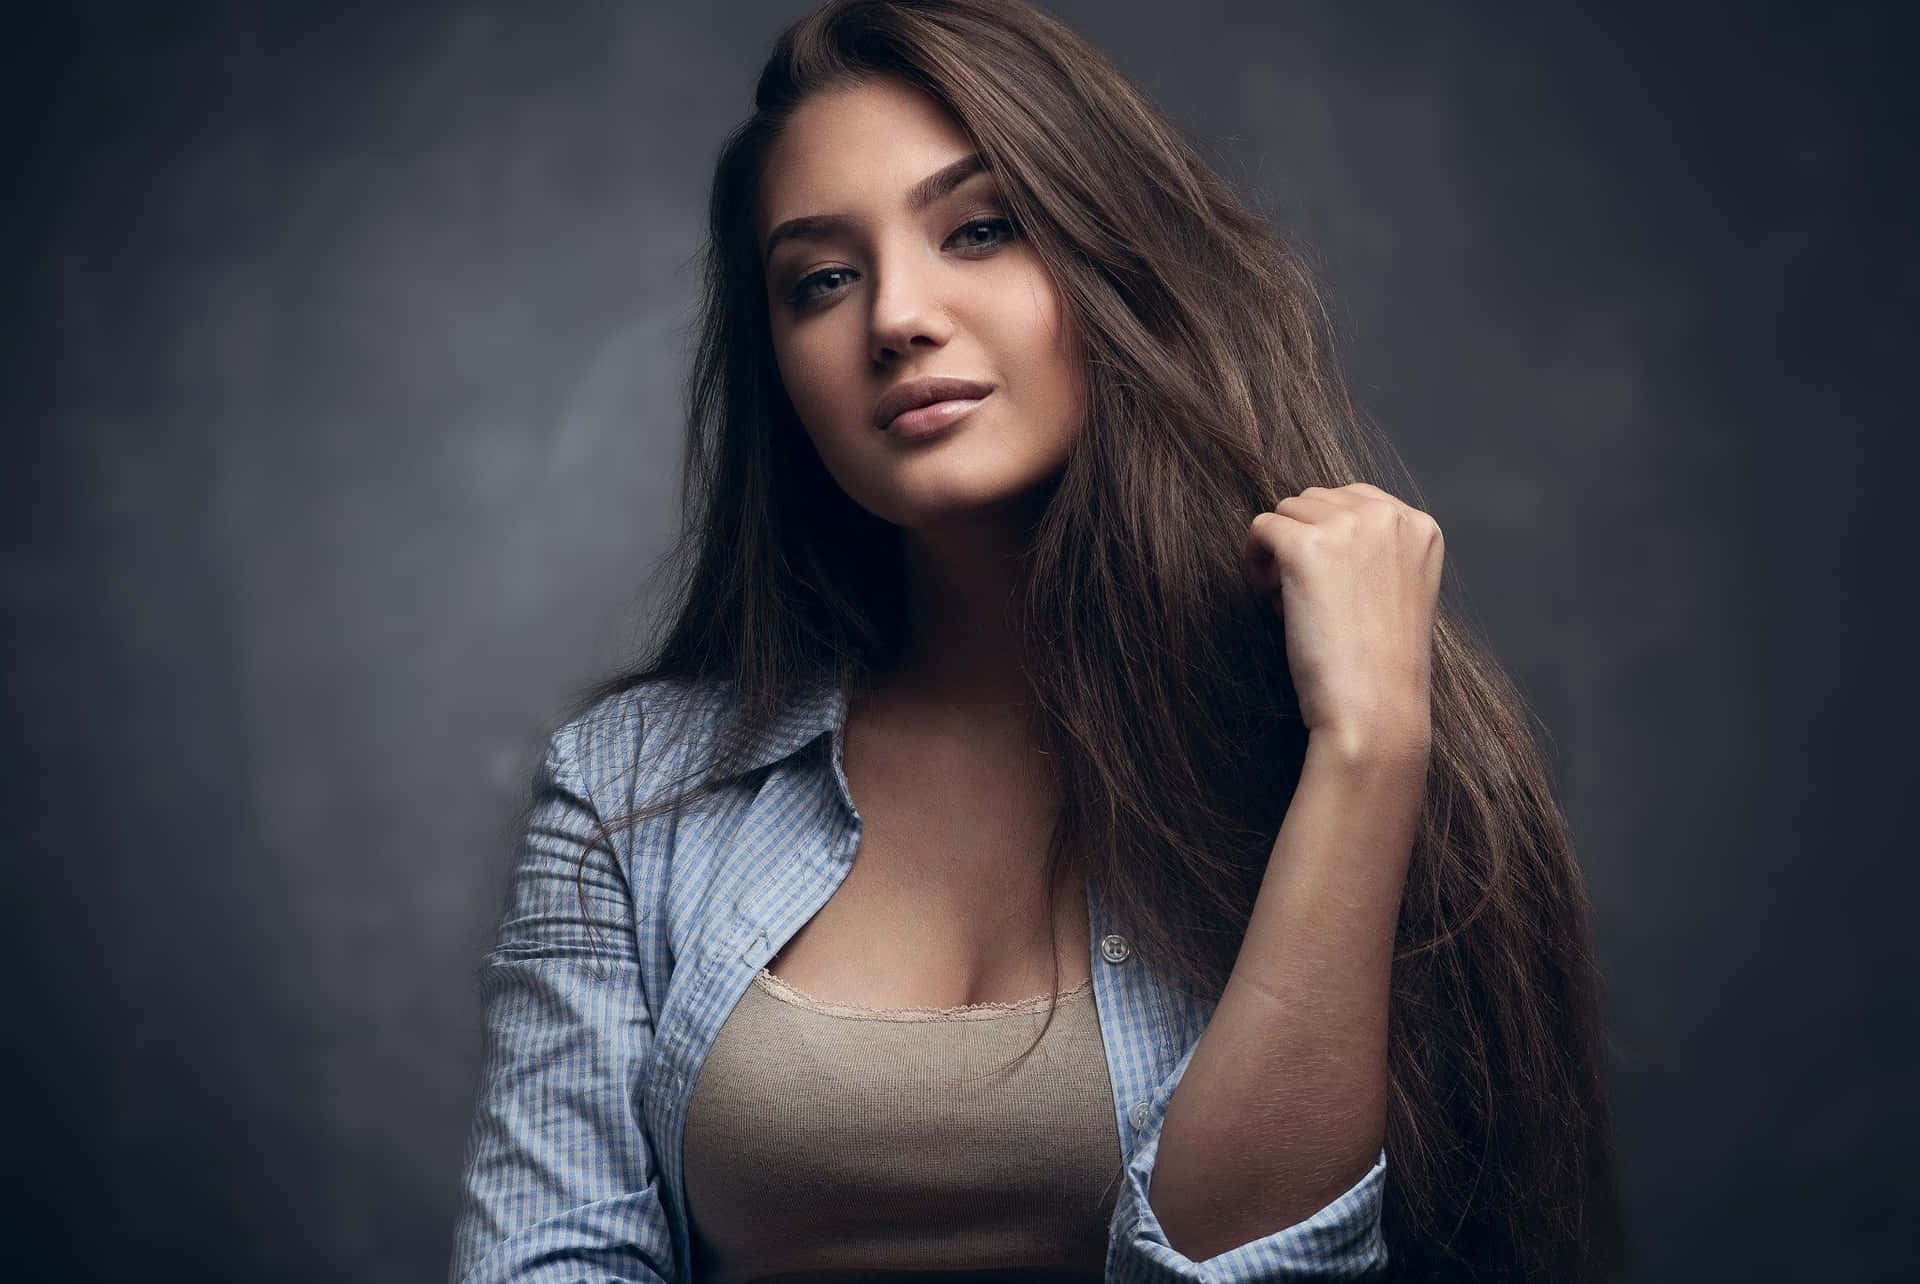 Confident Young Woman Portrait Background